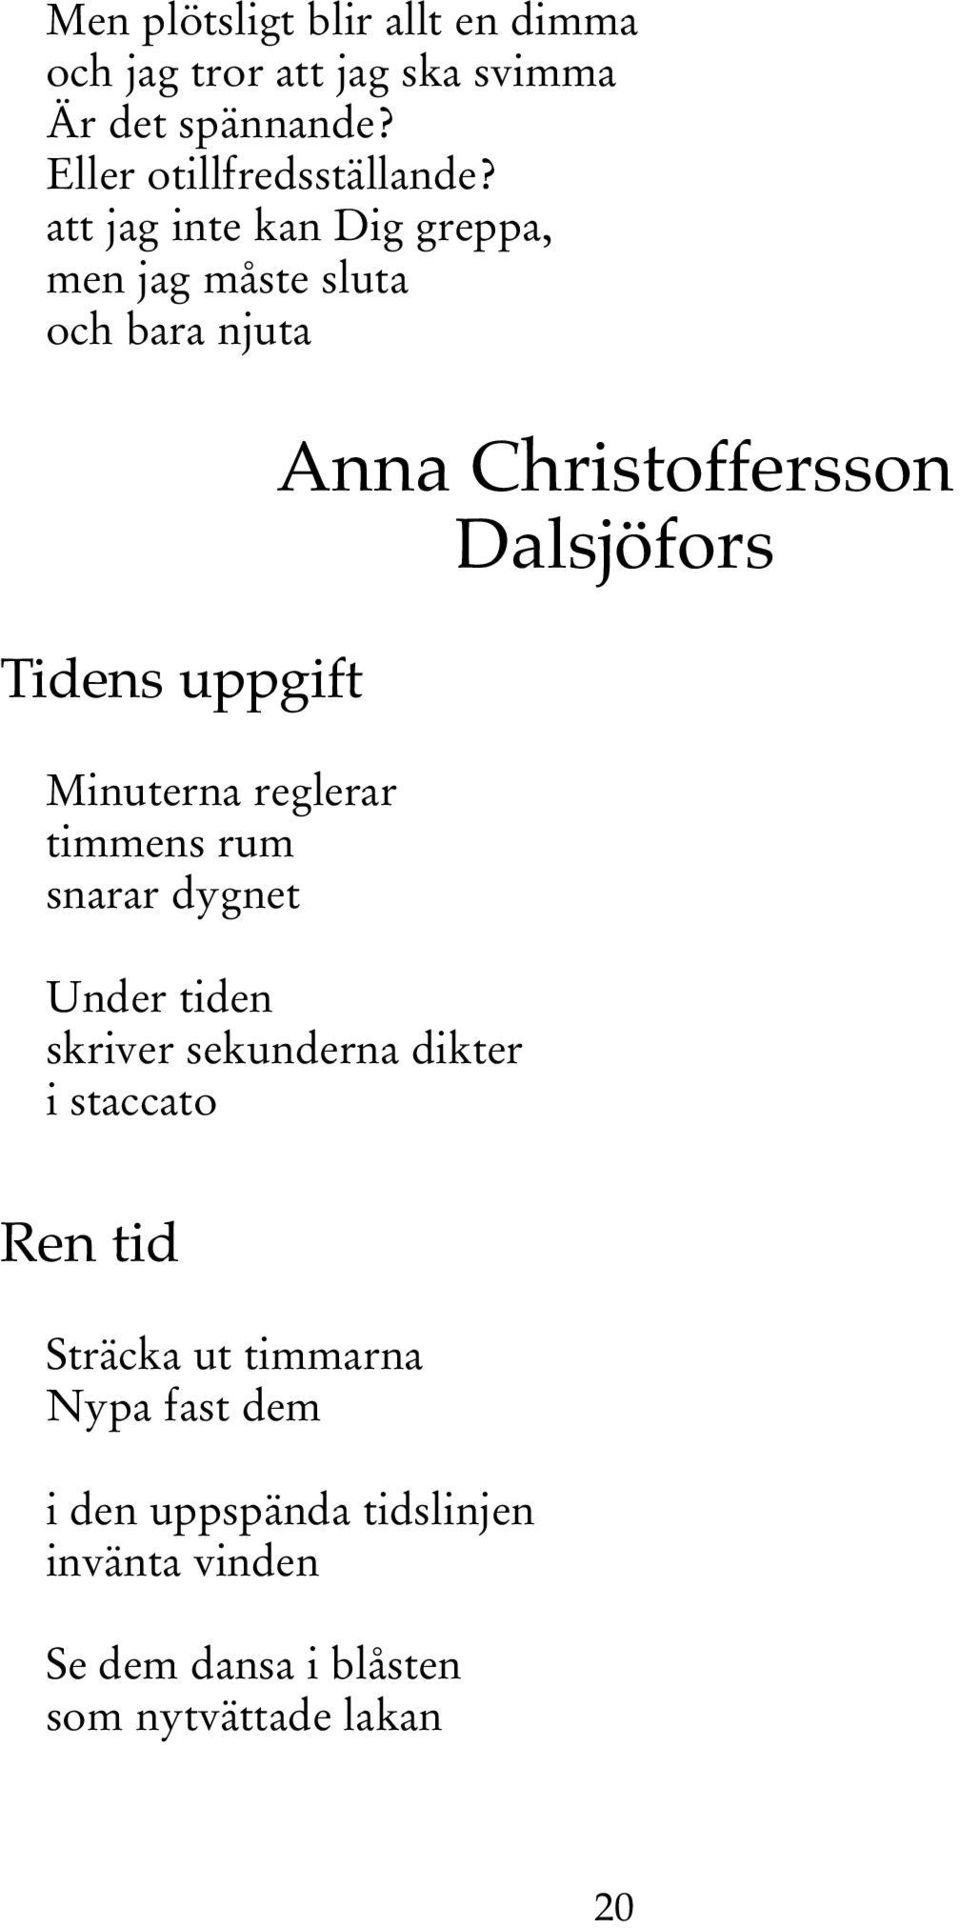 snarar dygnet Anna Christoffersson Dalsjöfors Under tiden skriver sekunderna dikter i staccato Ren tid Sträcka